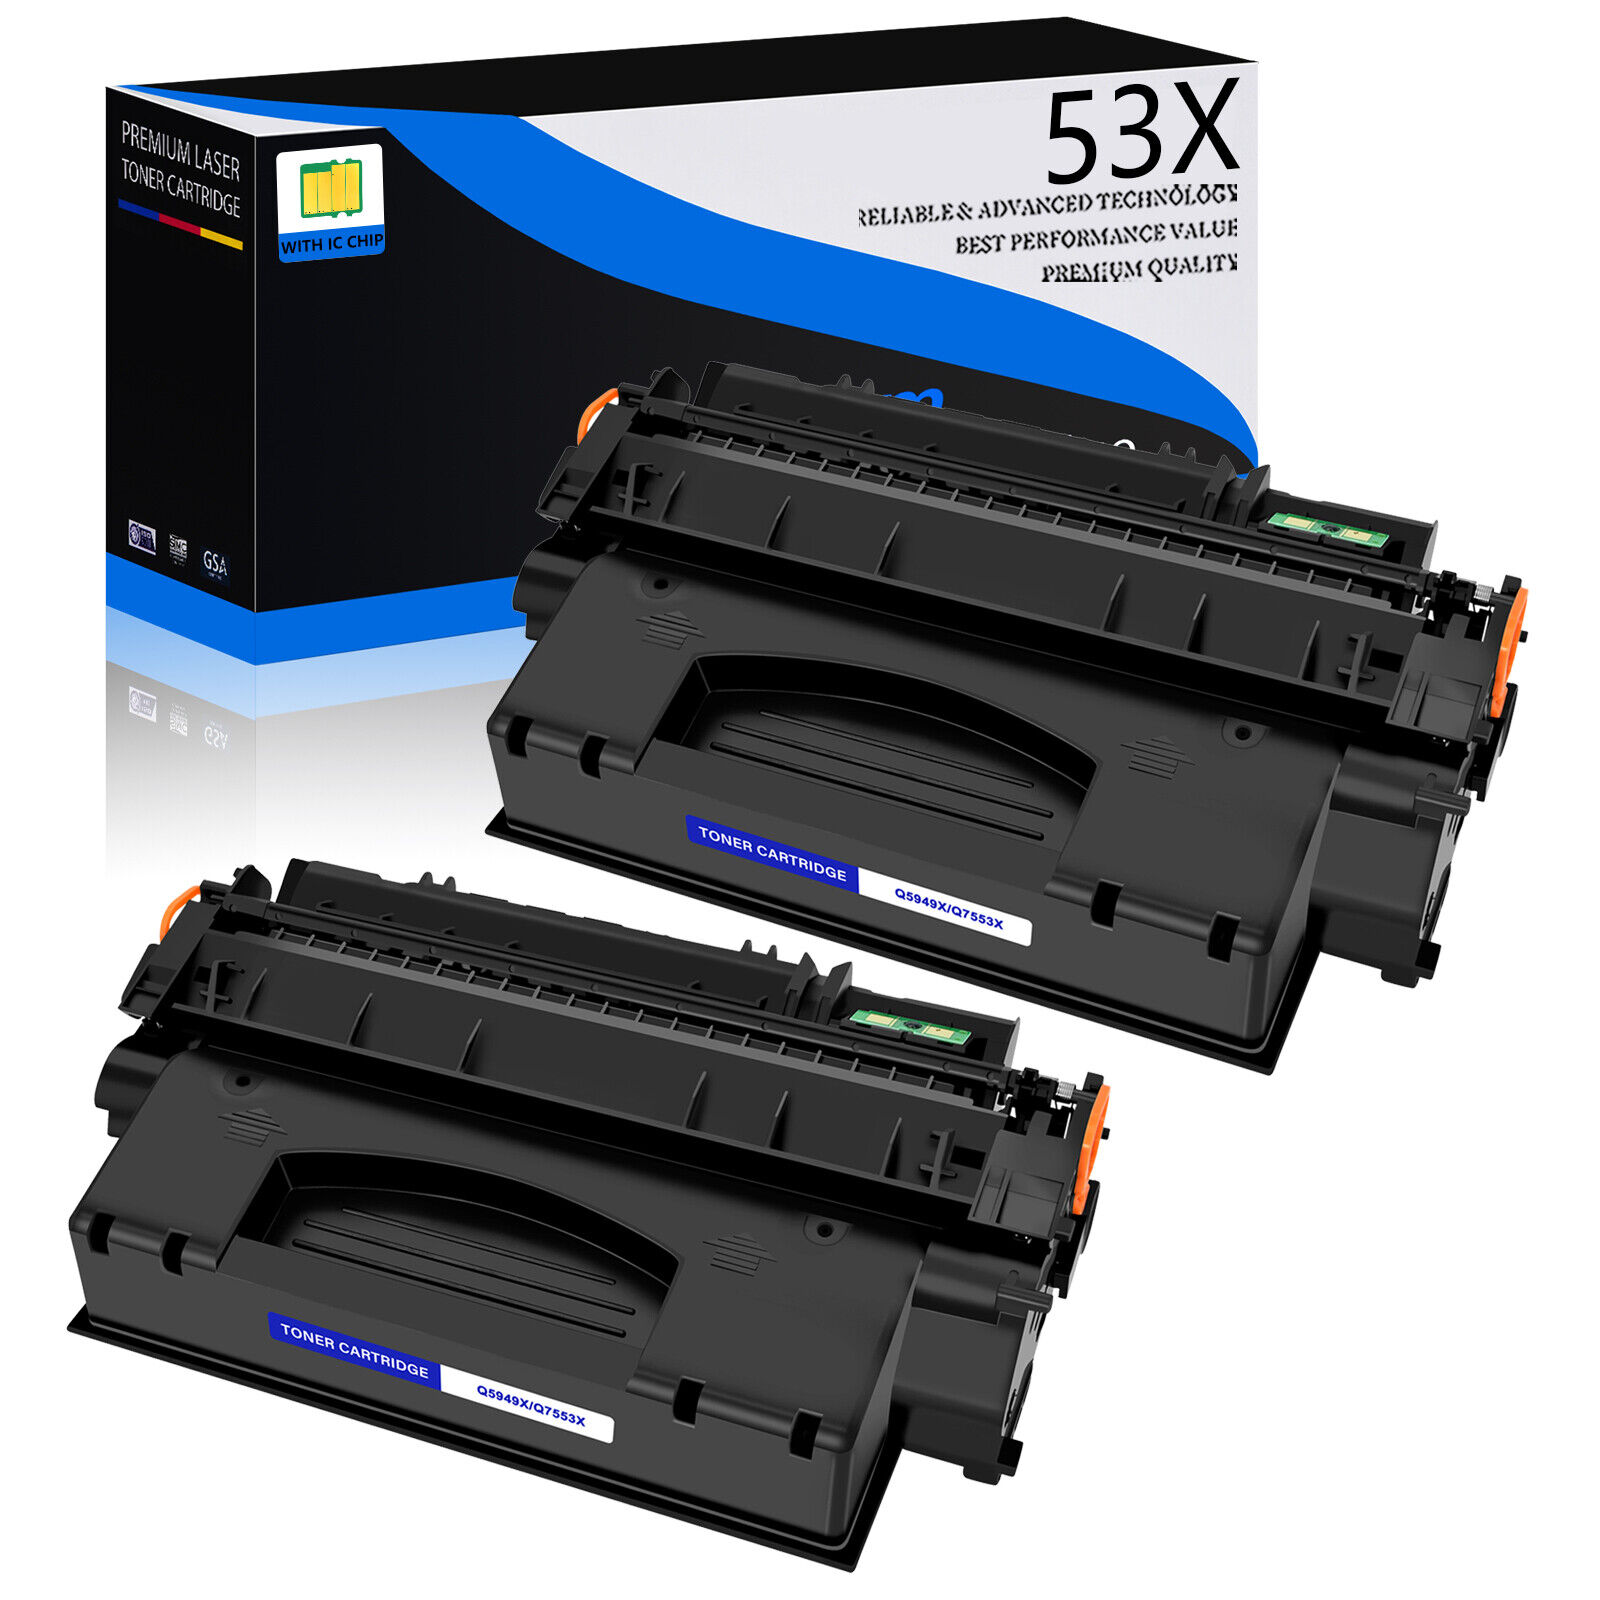 2PK Q7553X 53X Black Toner Cartridge for HP LaserJet M2727nf M2727nfs MFP P2015